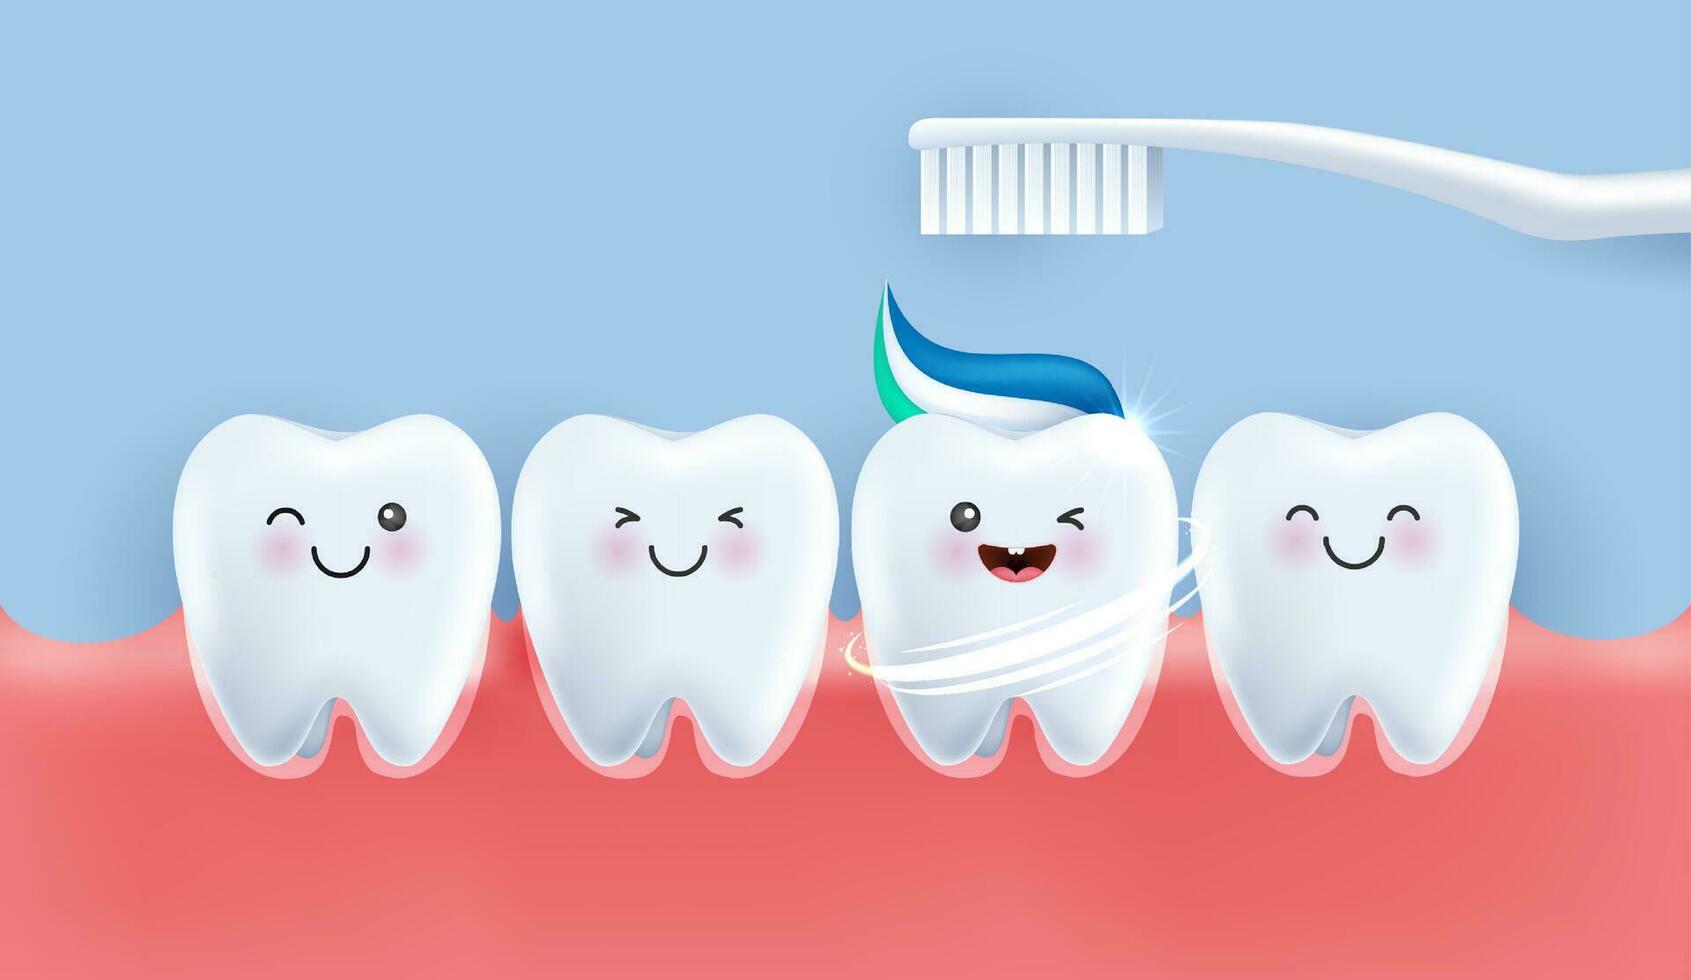 dientes es contento cepillo tu dientes con pasta dental. dientes adecuado para niños dental clínica. dientes personaje para niños. linda dentista mascota para médico aplicaciones, sitios web y hospital. vector diseño.